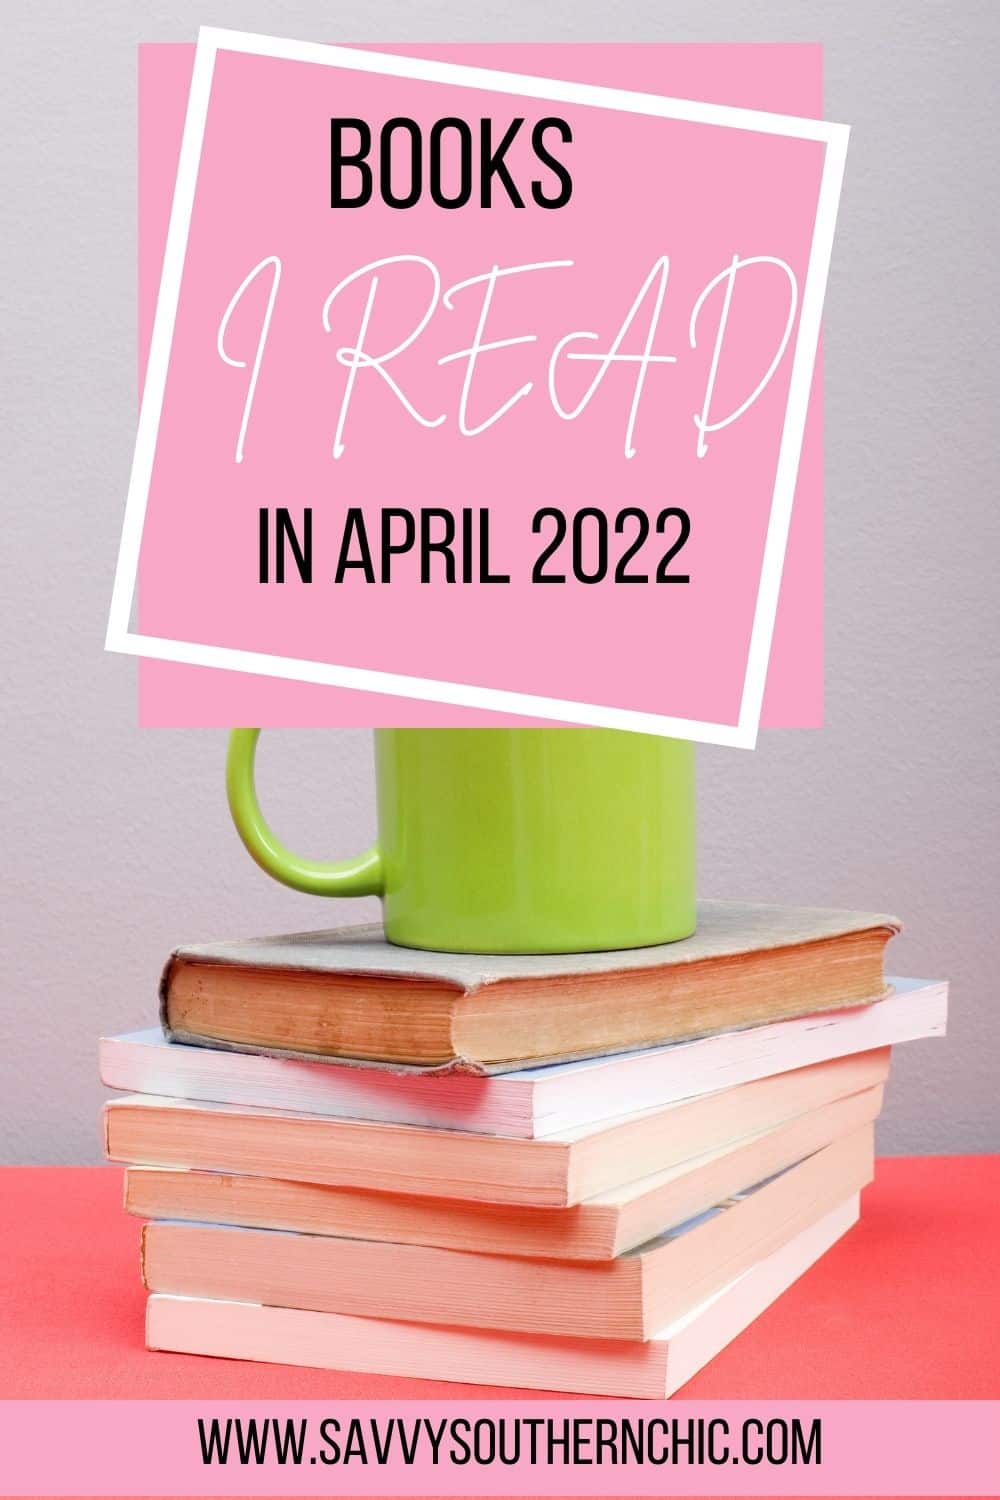 The Books I Read in April 2022